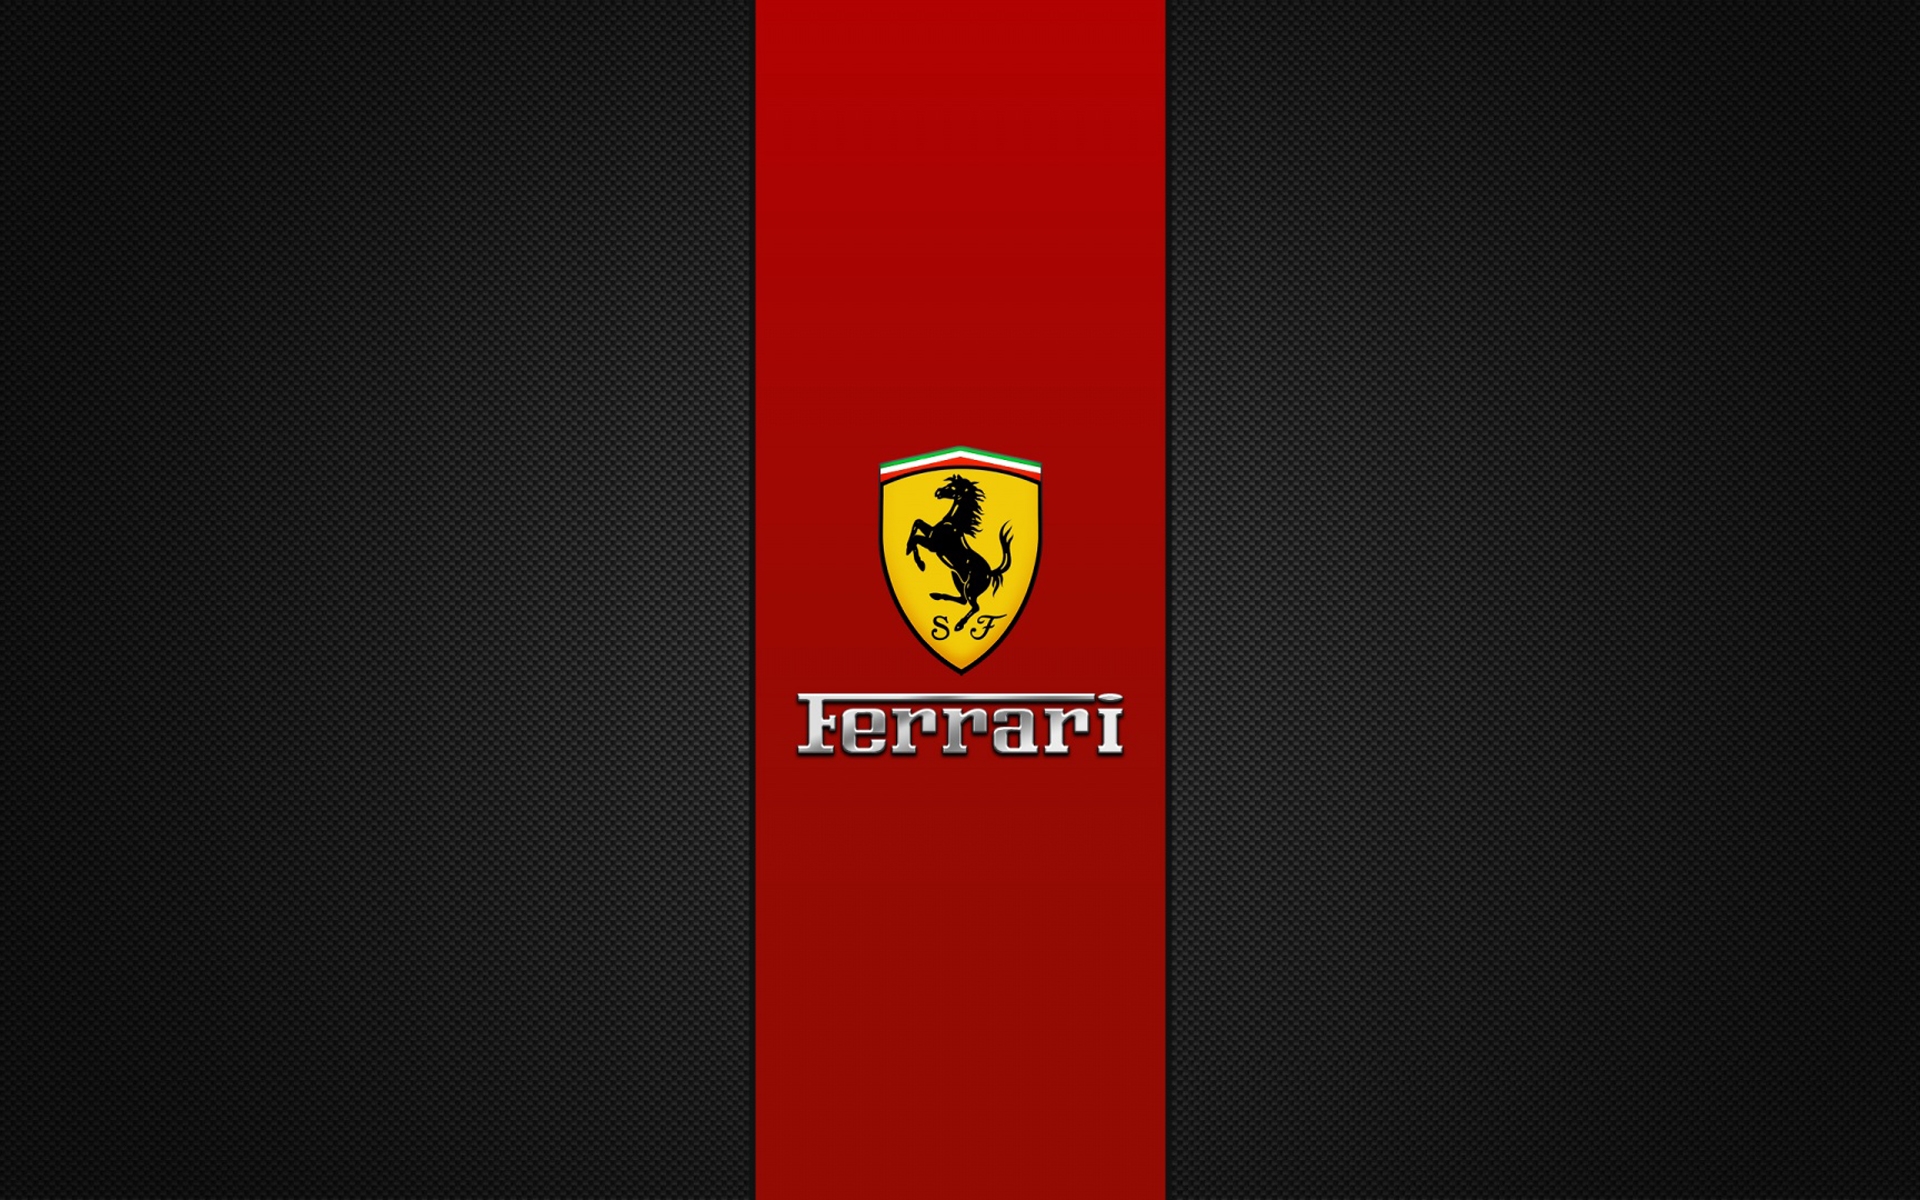 Ferrari Wallpaper HD Background Image Pics Photos